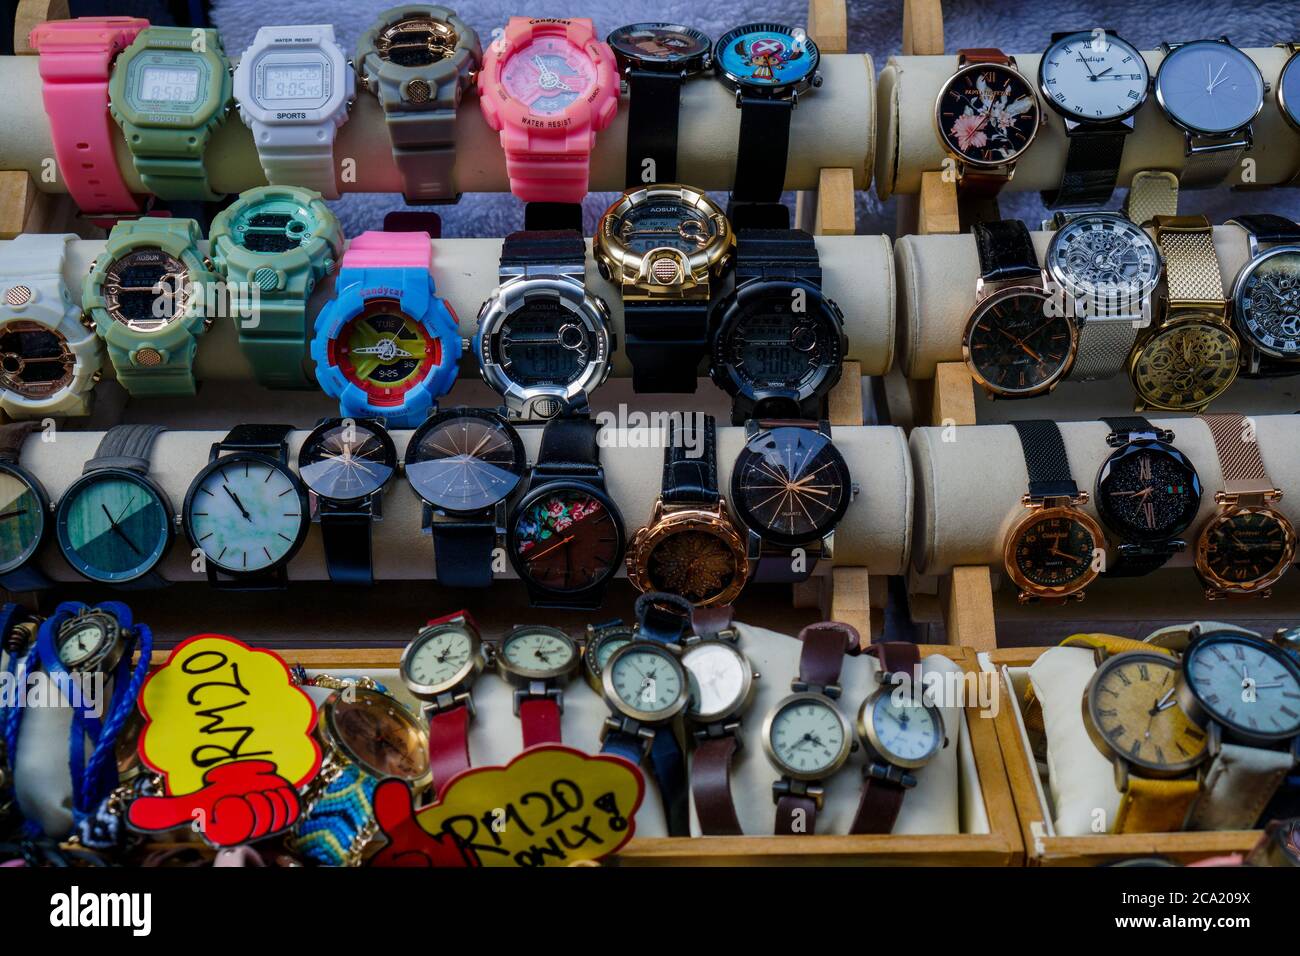 Ipoh, Malasia - 25 de julio de 2020 : variedad de relojes falsos o de Marca  en la tienda de souvenirs, Concubine Lane, que se venden a precios baratos  Fotografía de stock - Alamy